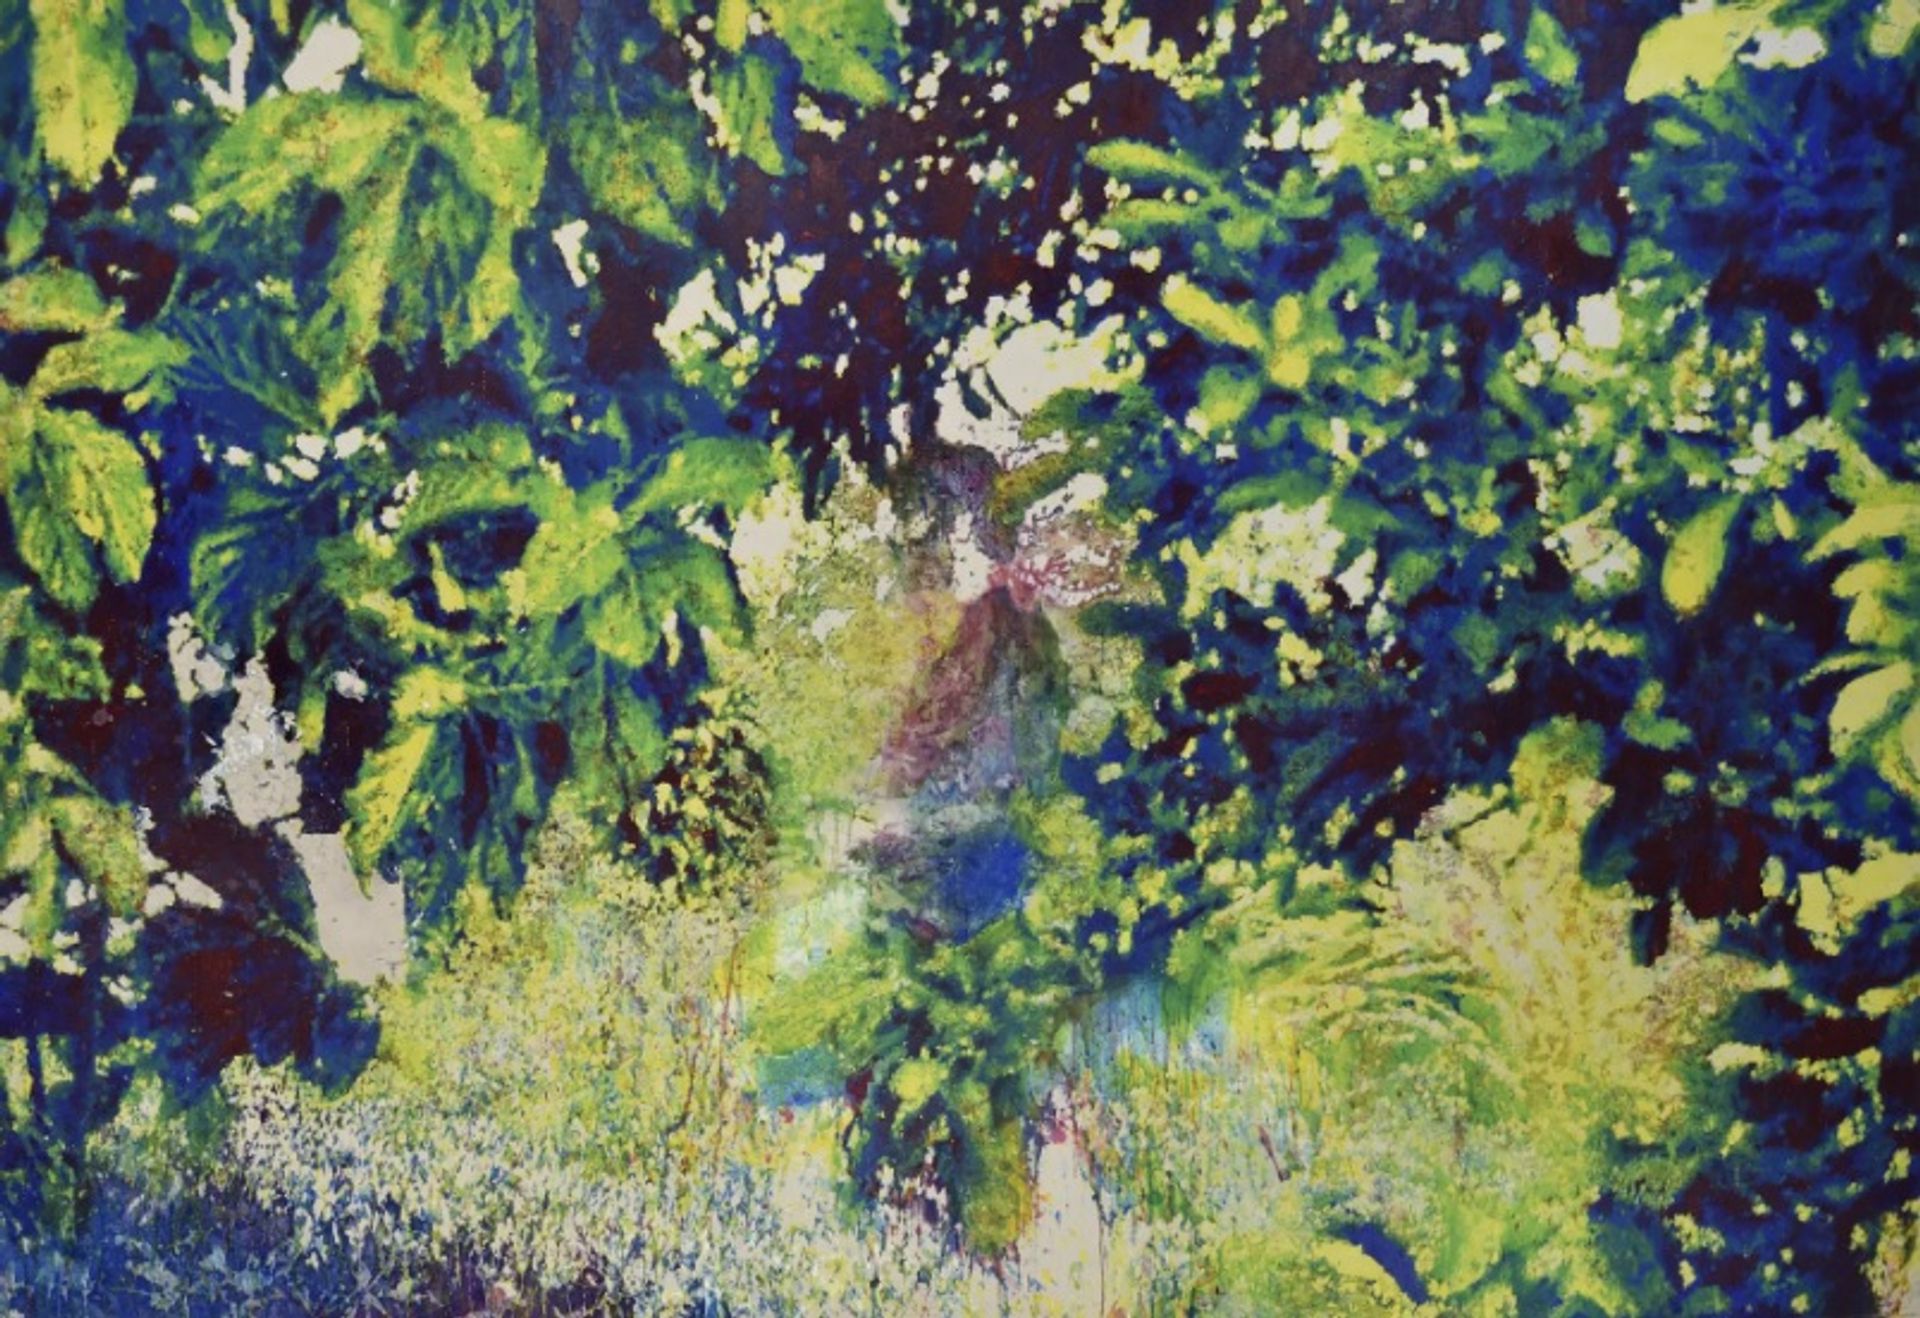 הג'ונגל הקטן(2022) של אלכסנדר לנואר

באדיבות האמן ואלמין ראצ'. צילום: סטודיו אלכסנדר לנואר